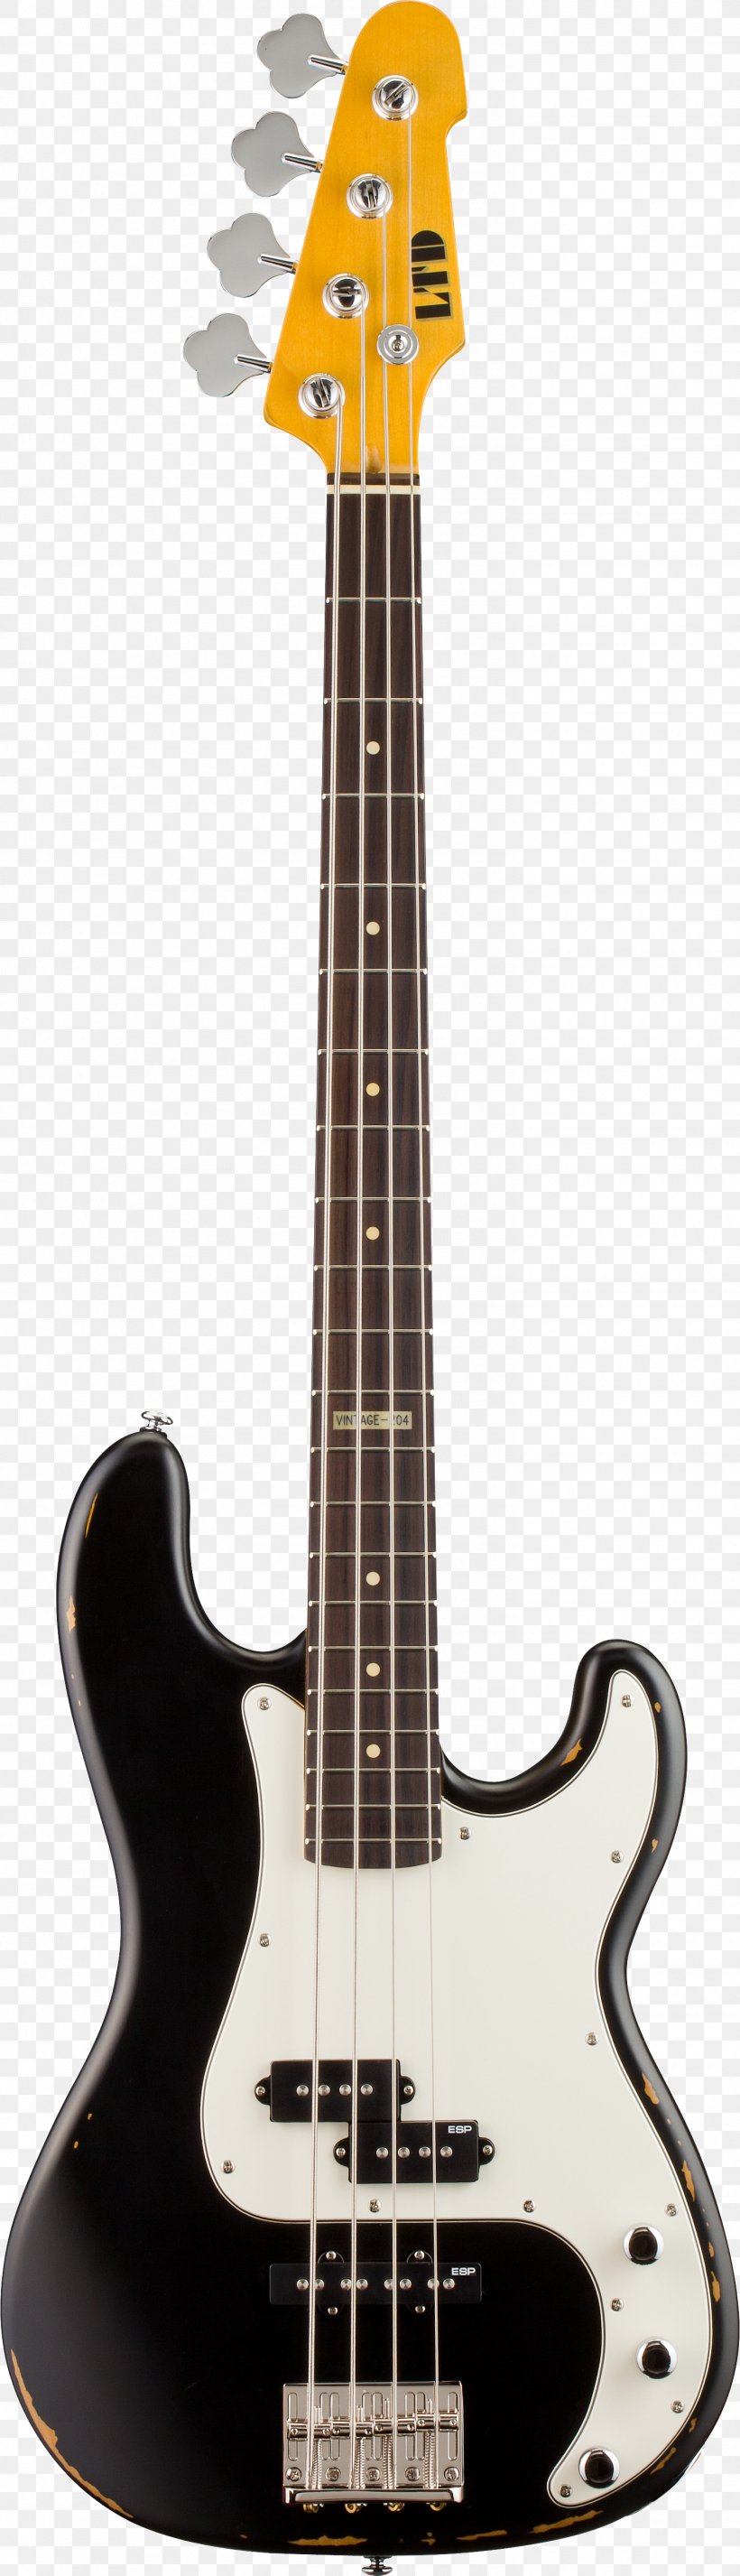 Fender Precision Bass Fender Mustang Bass Fender Jaguar Bass Bass Guitar, PNG, 1470x5115px, Fender Precision Bass, Acoustic Electric Guitar, Acoustic Guitar, Bass Guitar, Bass Violin Download Free